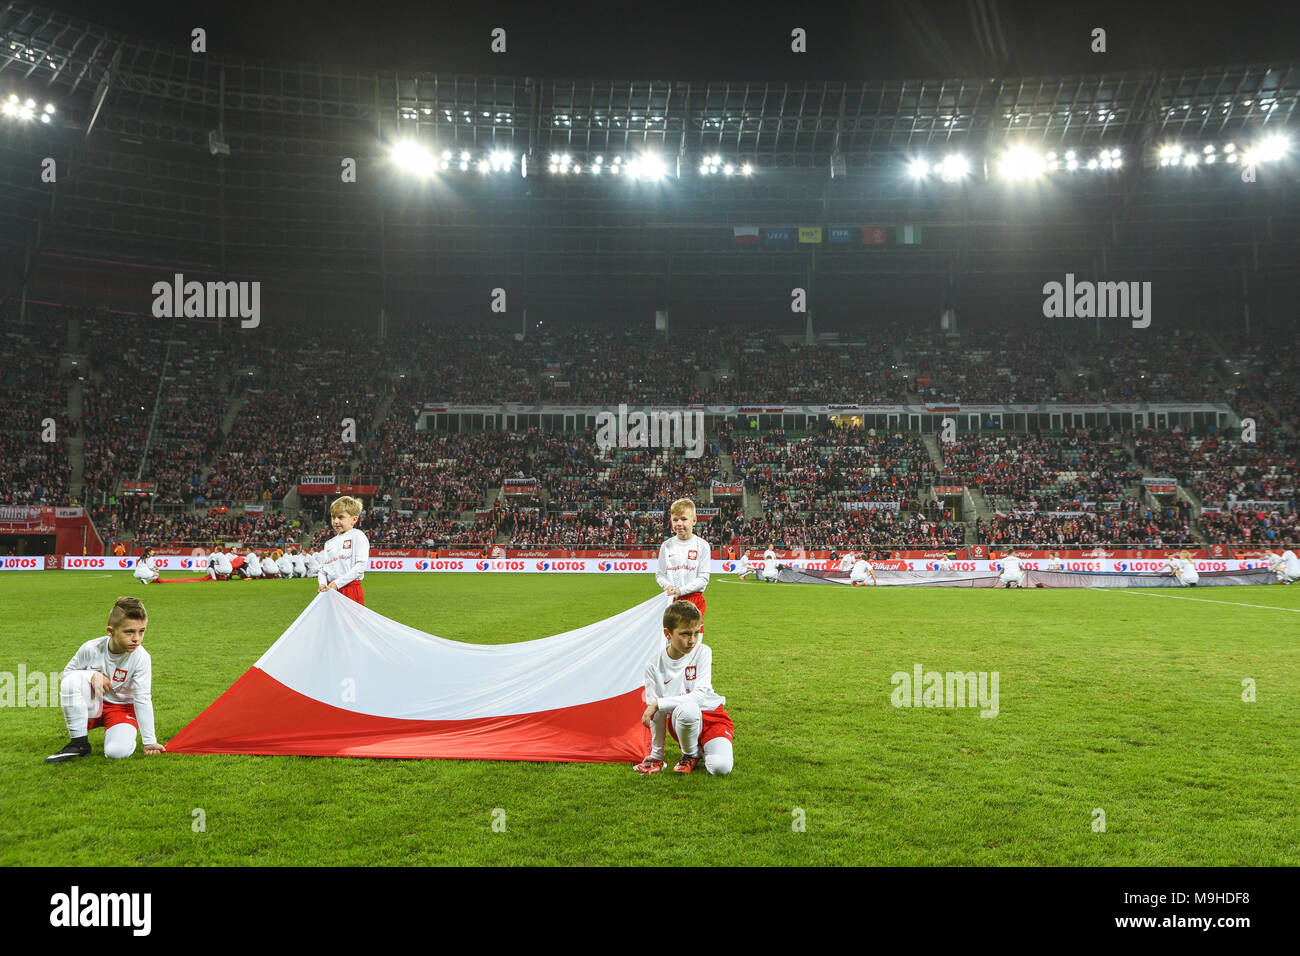 23.03.2018 Wroclaw Mecz towarzyski Polska - Nigeria N/z flaga Polski i stadion widok ogolny Fot. Piotr Dziurman/REPORTER  ---------------==========--- Stock Photo